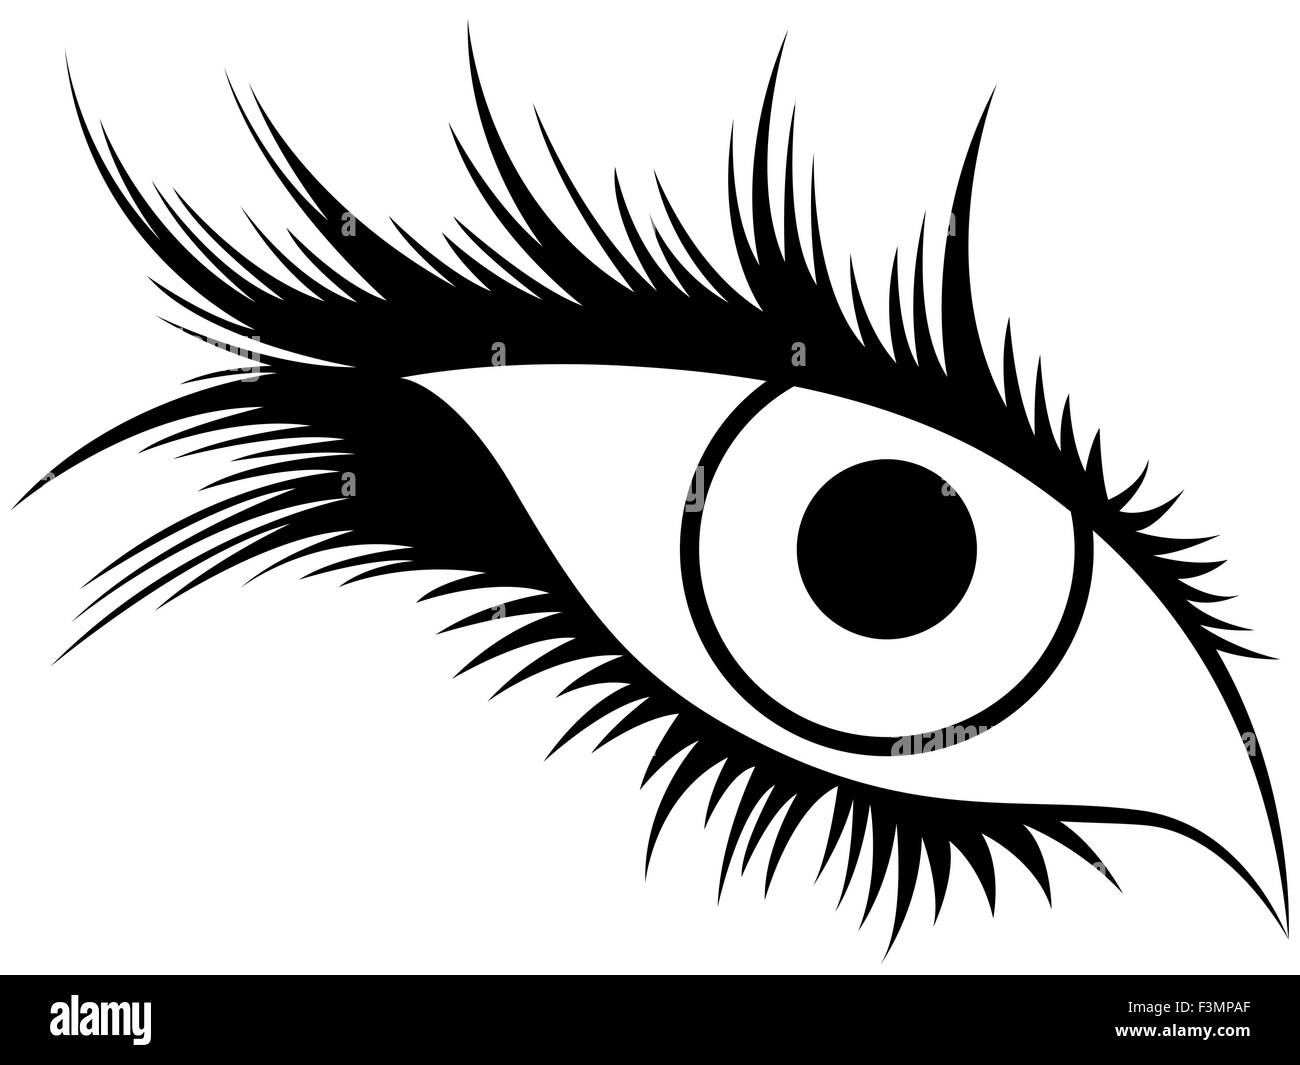 Abstrakte schwarze Silhouette des menschlichen Auges mit langen Wimpern, Handzeichnung Vektor-illustration Stock Vektor